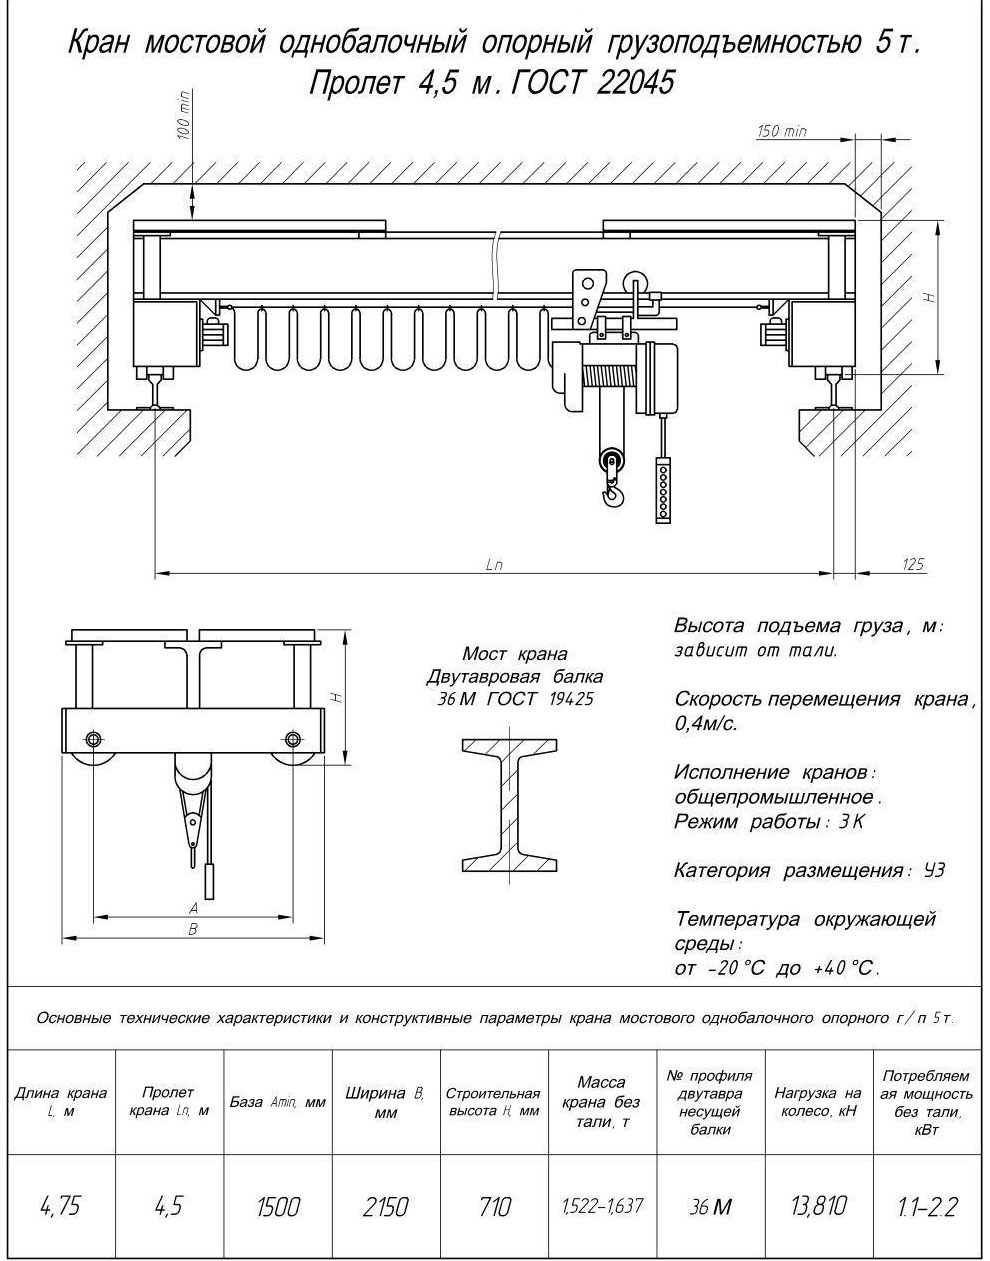 Чертеж и характеристики кран-балка электрическая опорная 5 т пролет 4,5 м